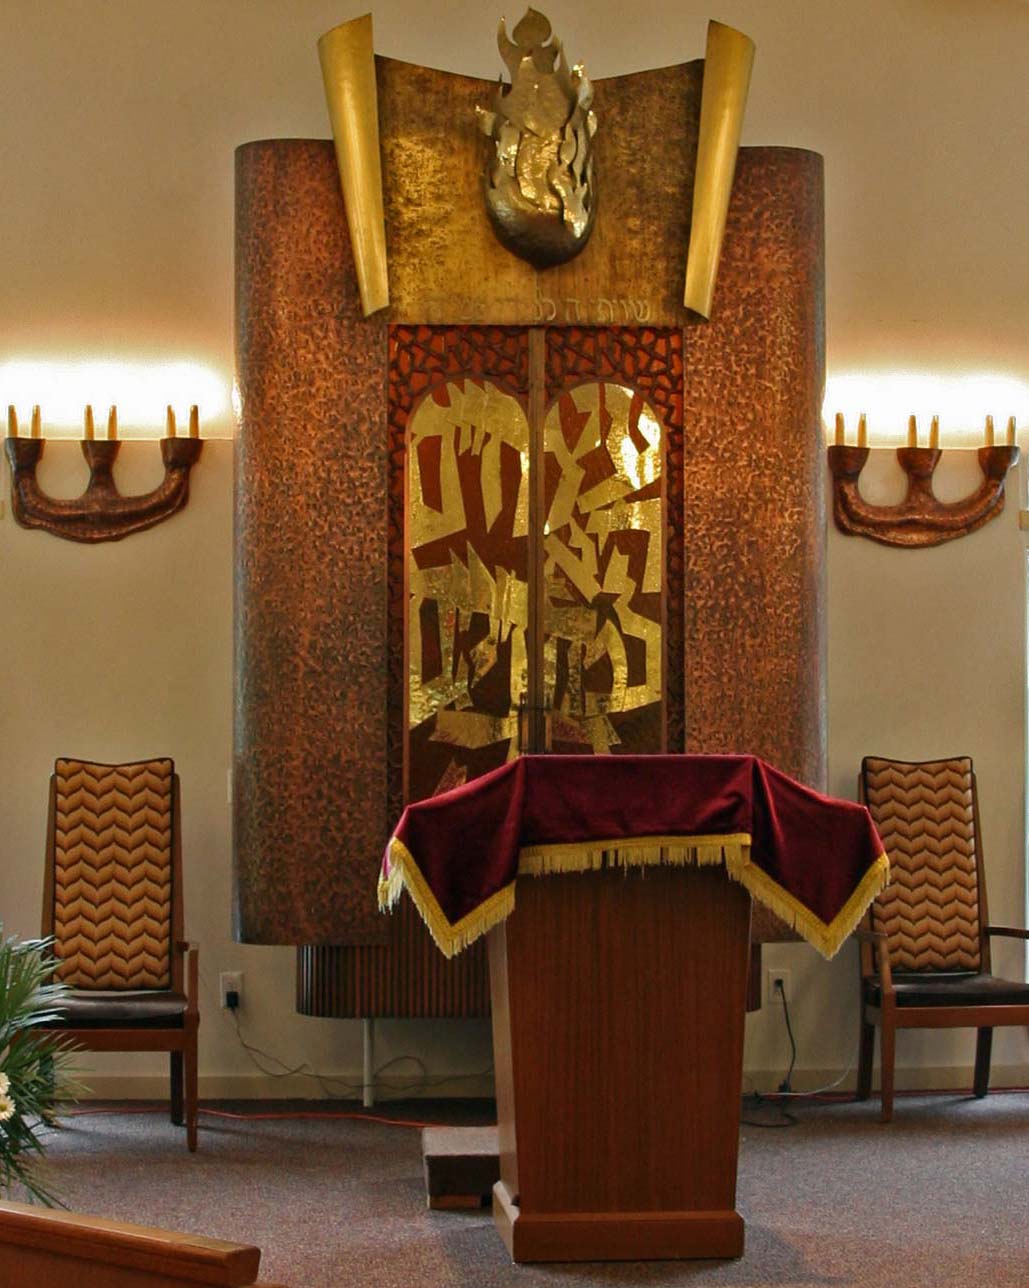 Congregation B Nai Torah